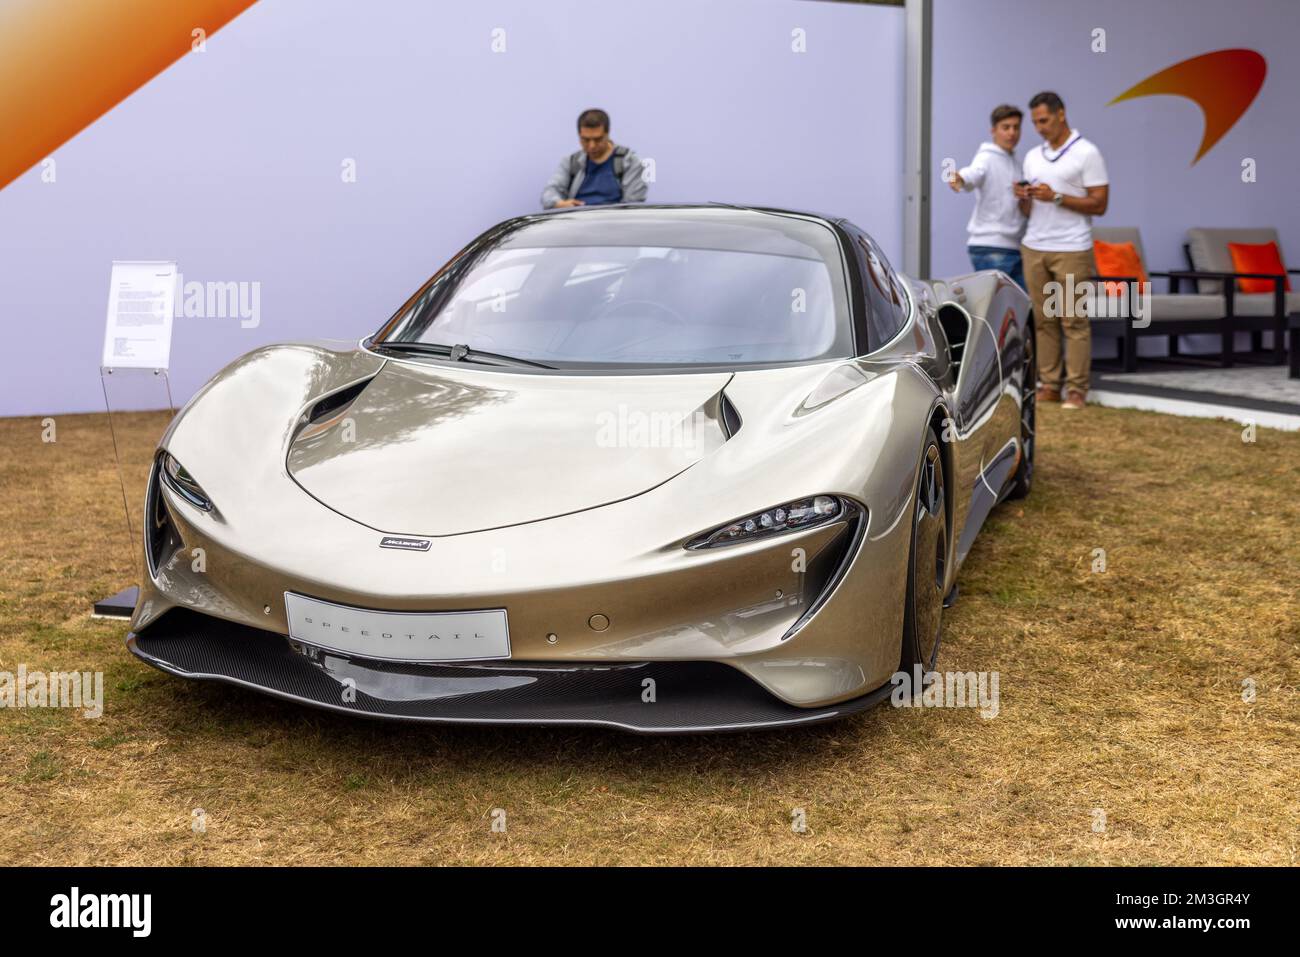 McLaren Speedtail, exposée au salon automobile Concours d’Elégance, qui s’est tenu au Palais de Blenheim le 4th septembre 2022. Banque D'Images